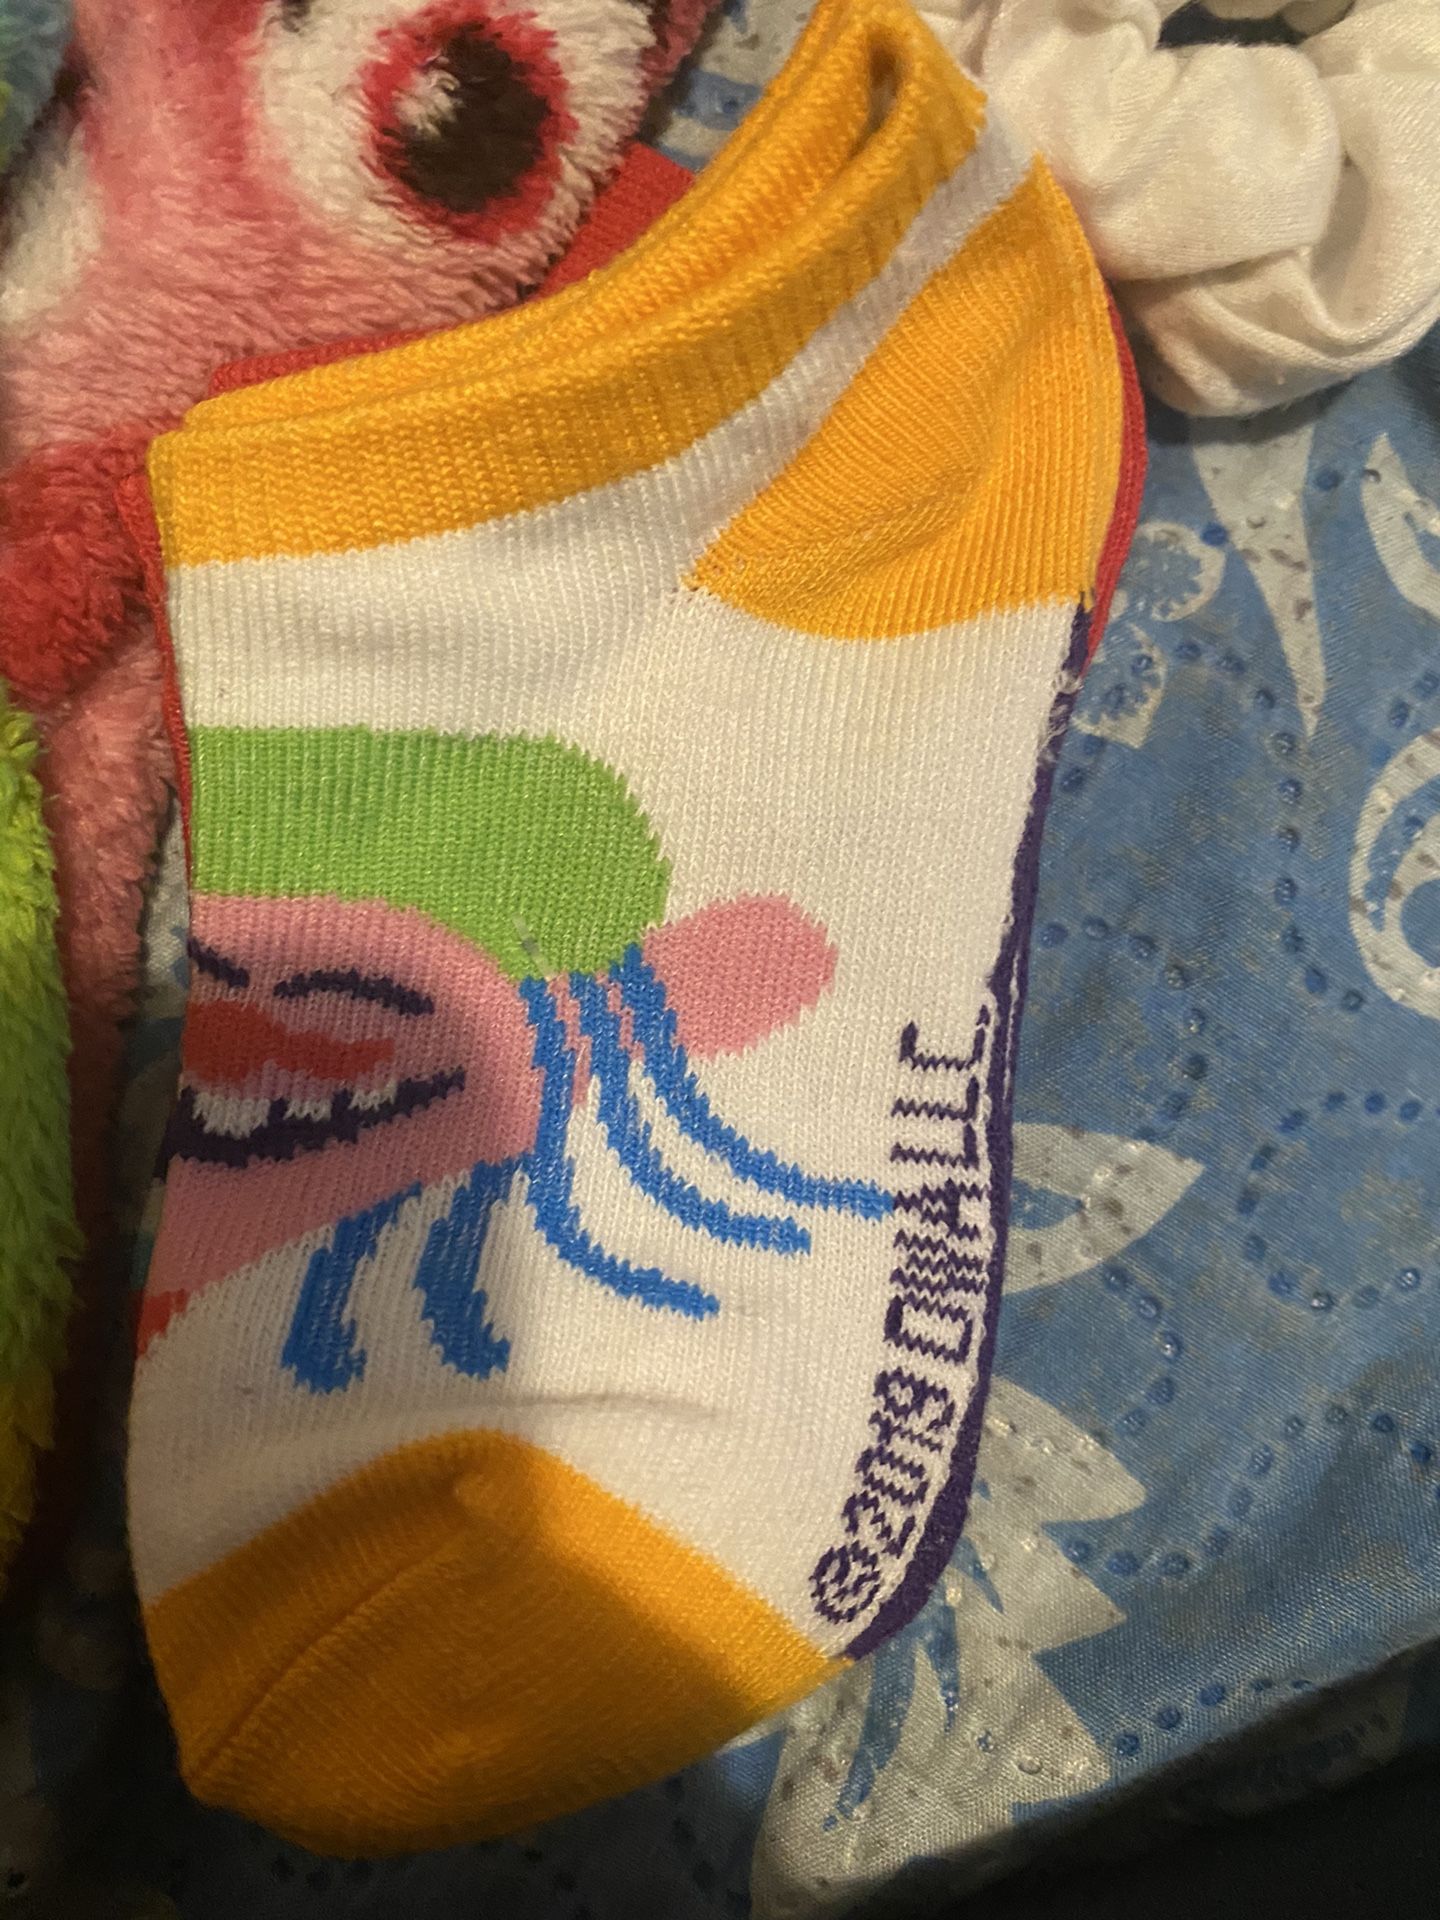 Trolls socks